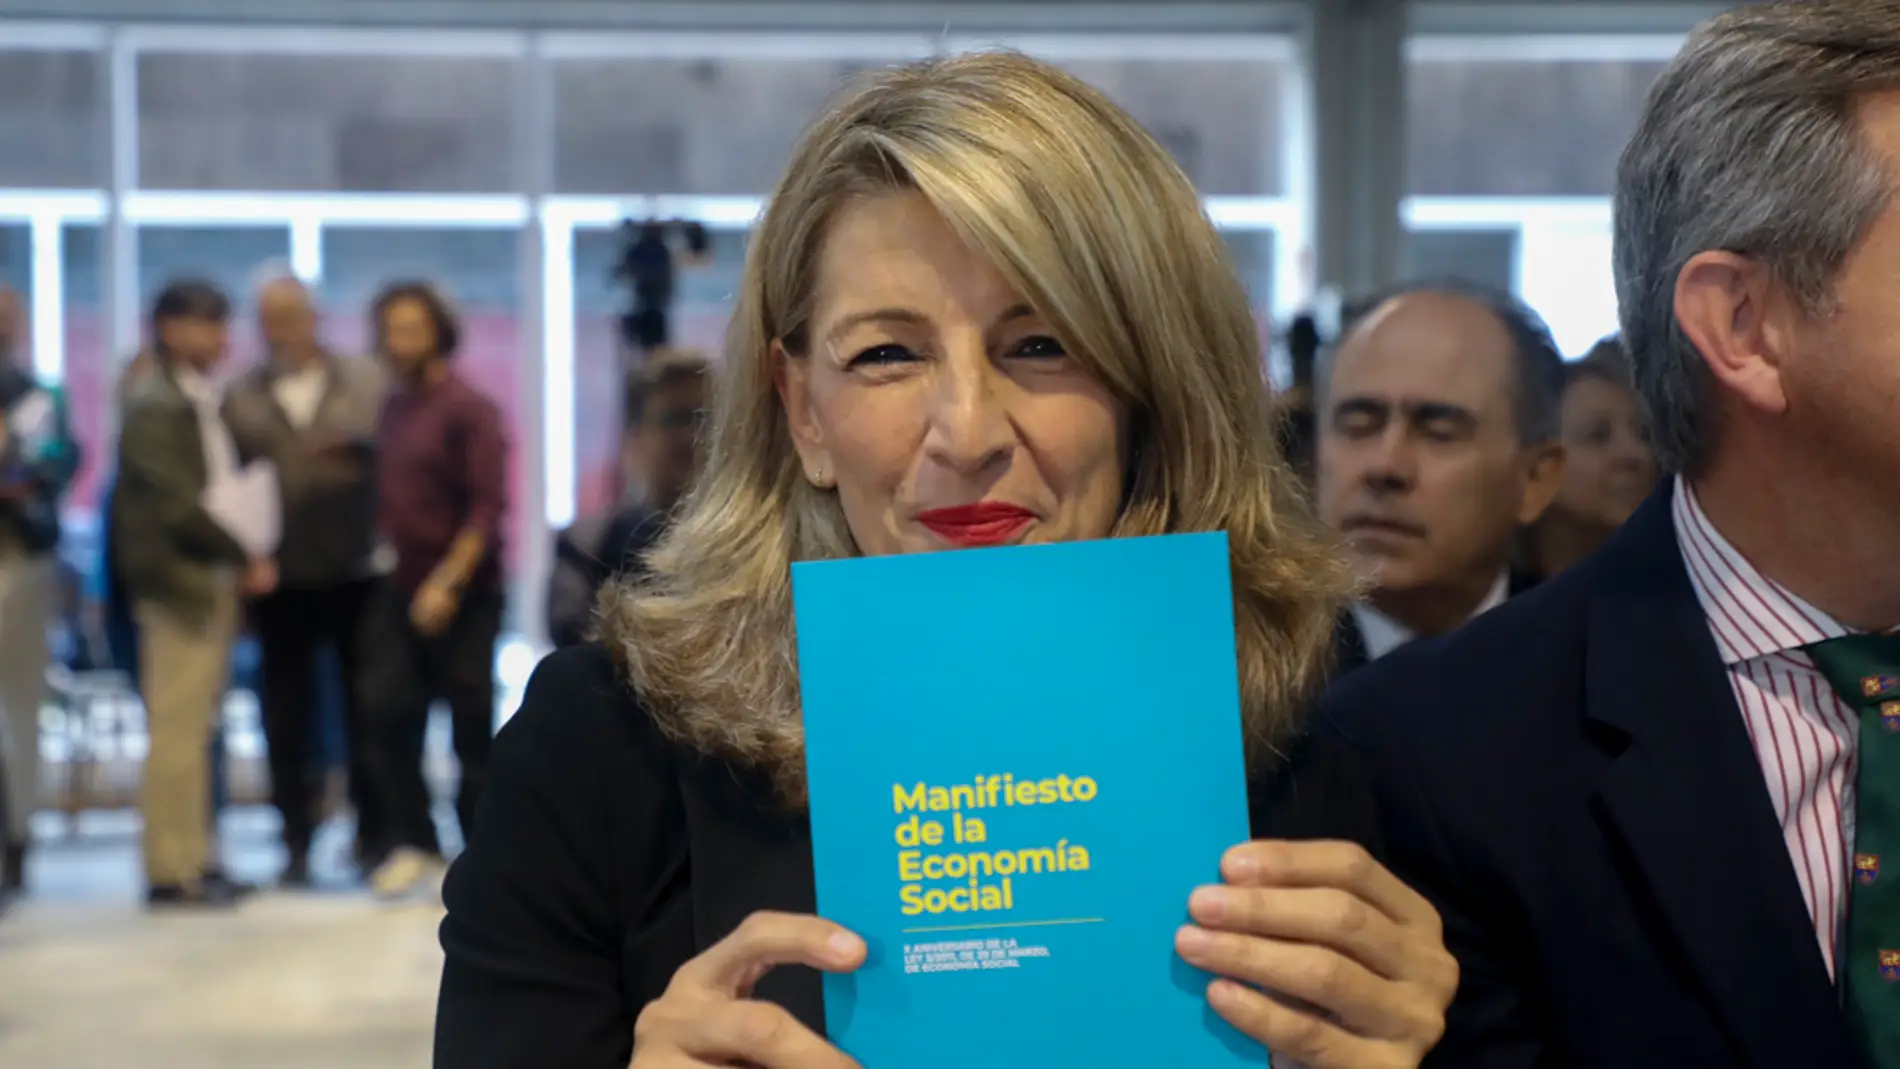 La vicepresidenta segunda del Gobierno central, Yolanda Díaz, presenta su propuesta de Manifiesto de la Economía Social este lunes en Santiago de Compostela/ EFE/Xoan Rey